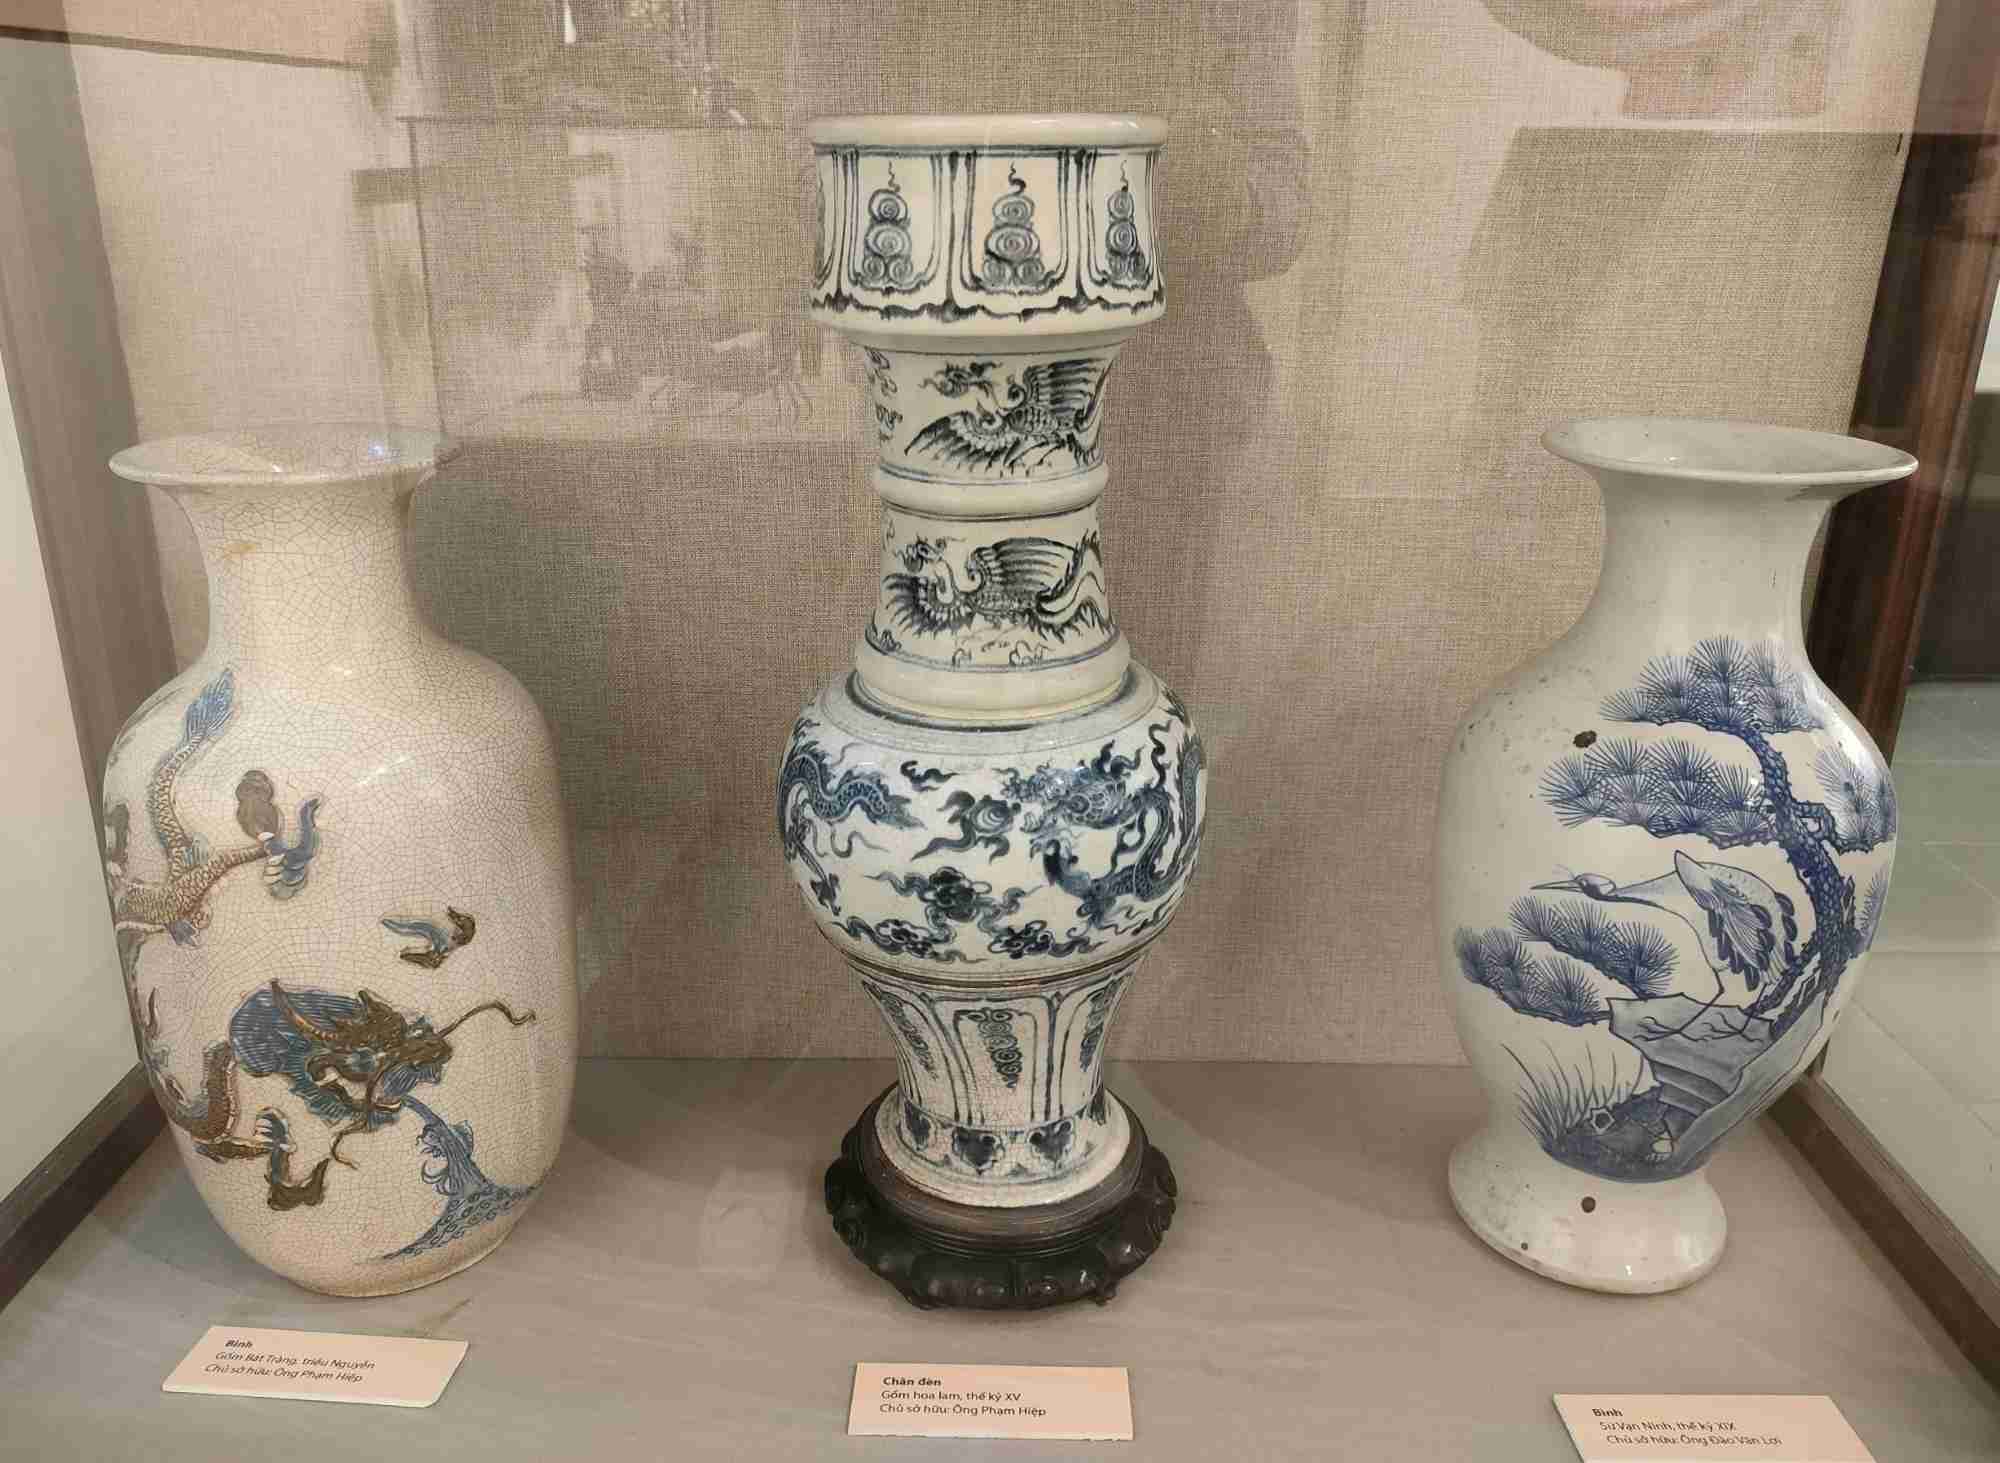 Một số cổ vật làm bằng gốm hoa lam cũng tham gia trưng bày. Theo thông tin từ Bảo tàng Hải Phòng, gốm hoa lam còn gọi là gốm men trắng vẽ lam, xuất hiện từ thế kỷ XIV, phát triển mạnh vào thế kỷ XV - XVI với nhiều loại hình phong phú, đa dạng. Gốm hoa lam được xem là mảng màu rực rỡ trong bức tranh toàn cảnh của gốm Việt Nam.